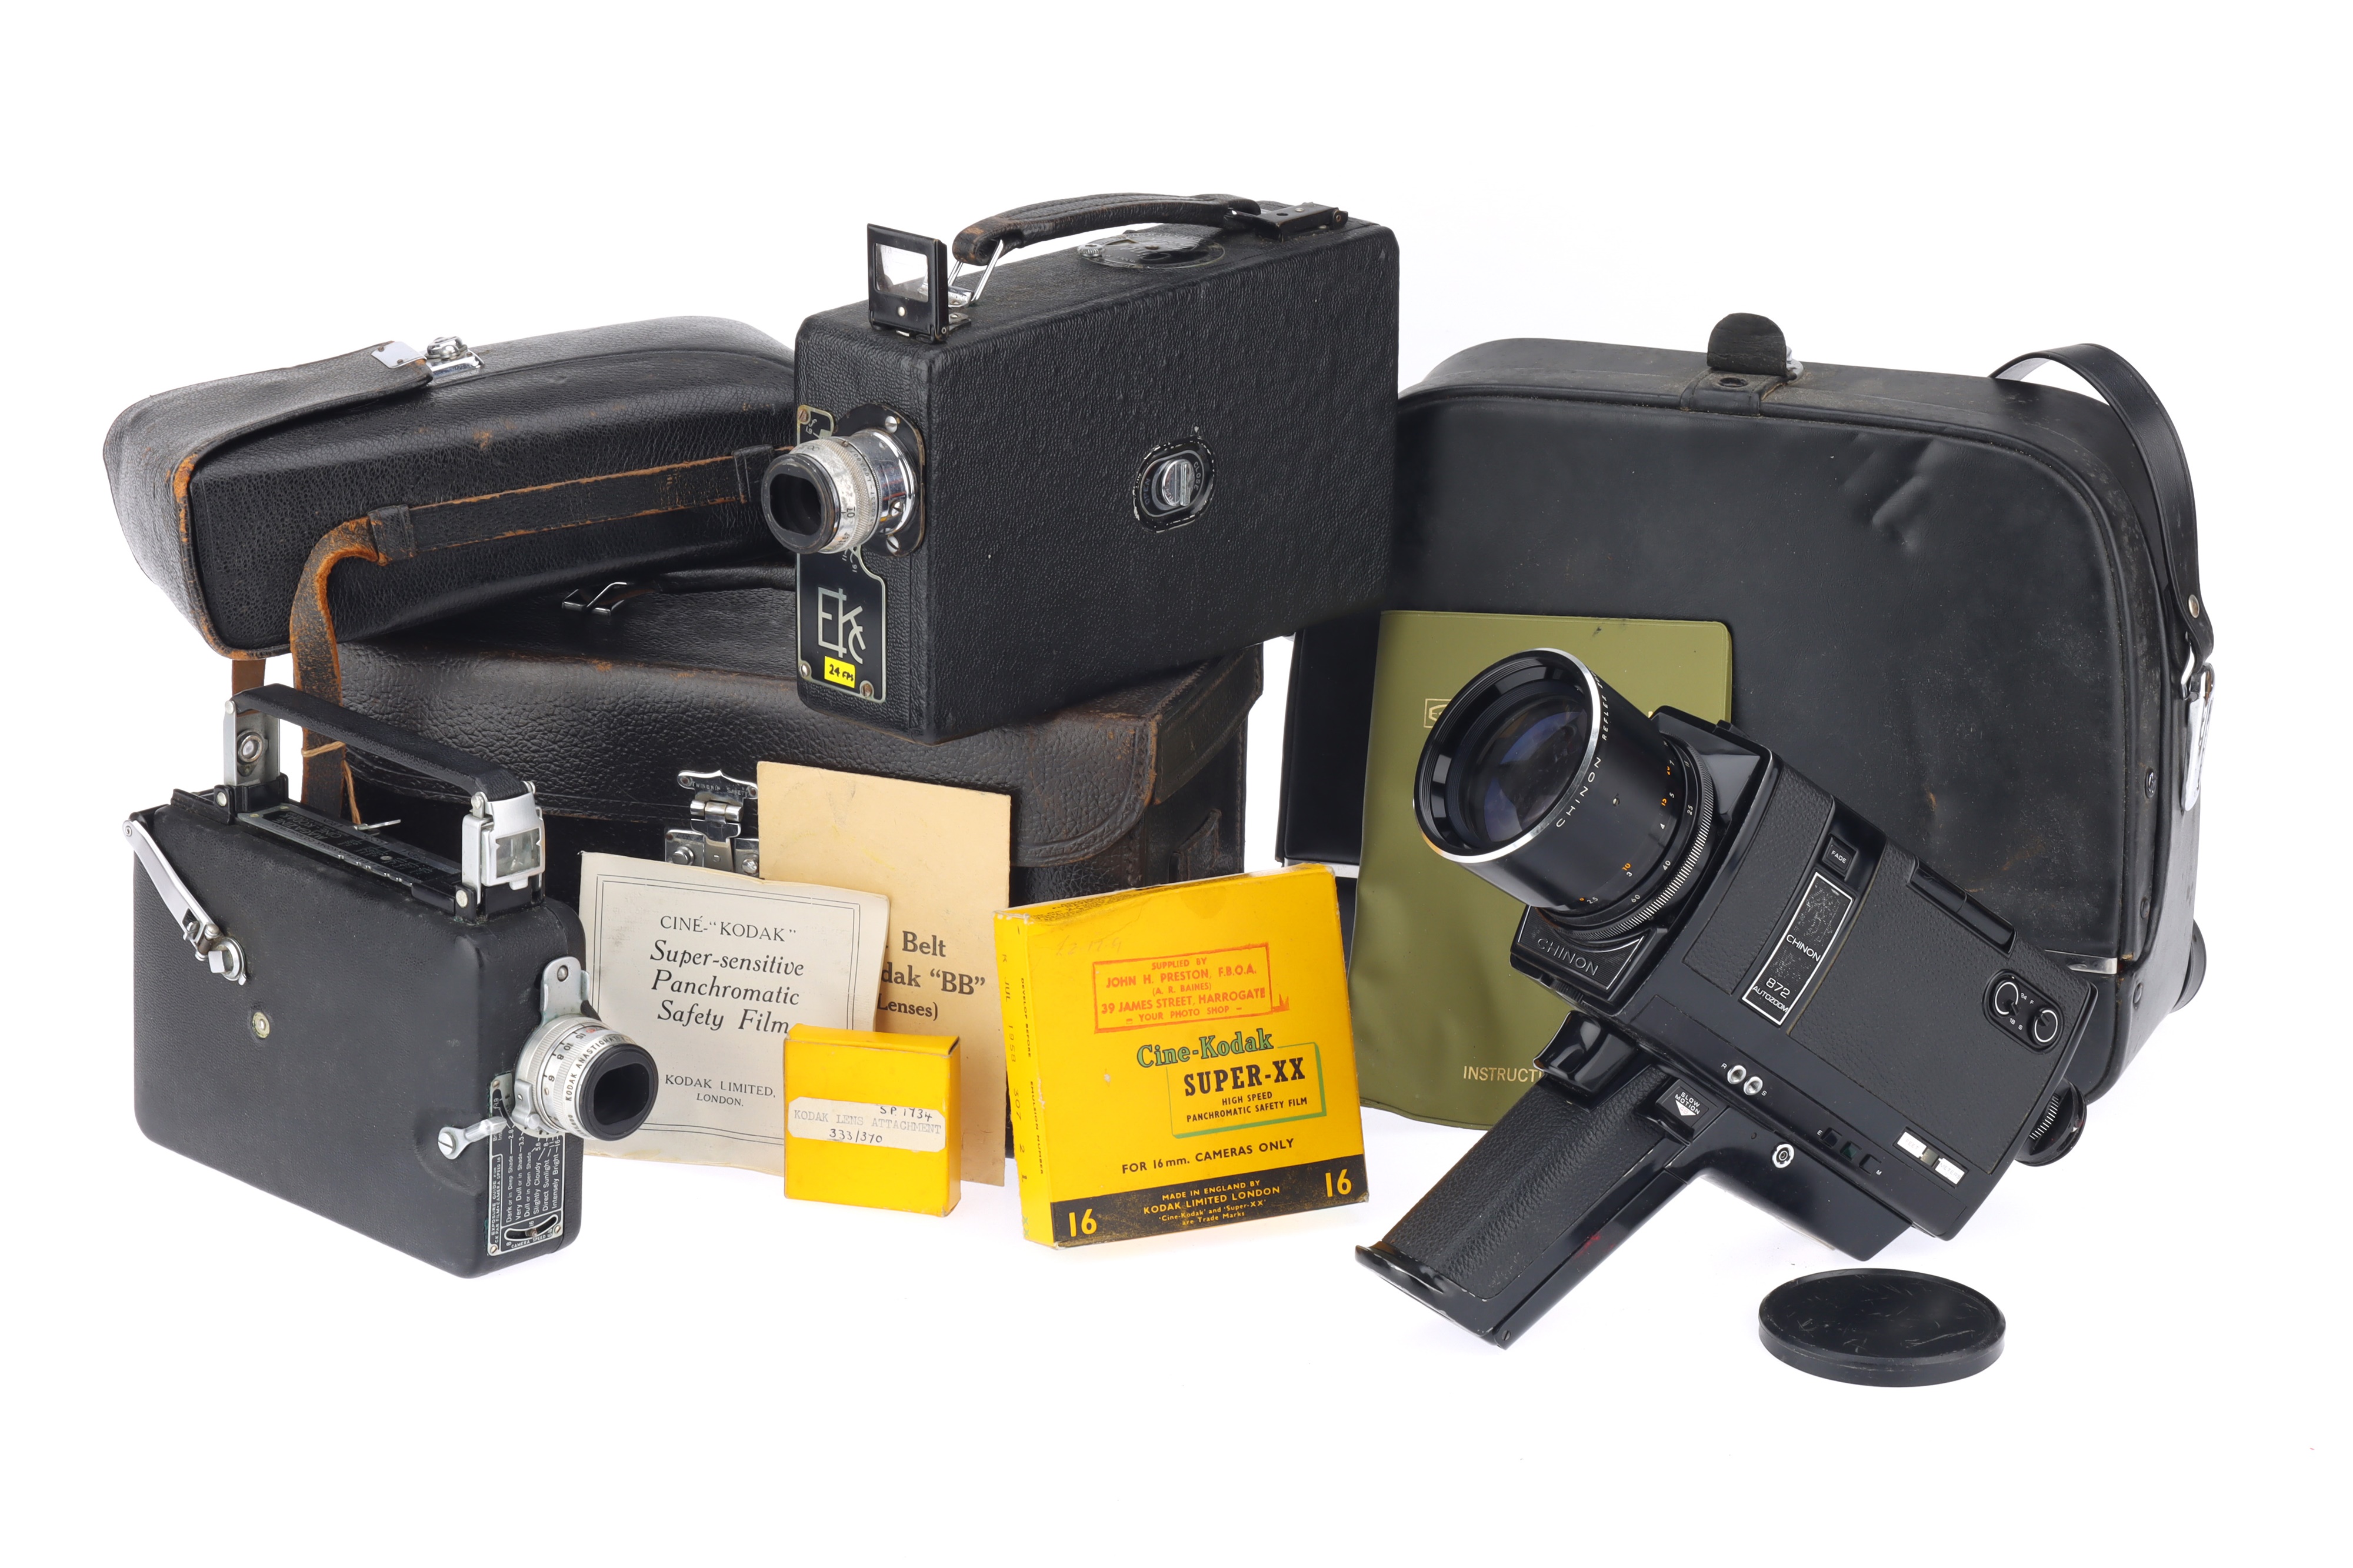 Two Cine-Kodak 16mm Cameras and a Chinon Super 8 Camera